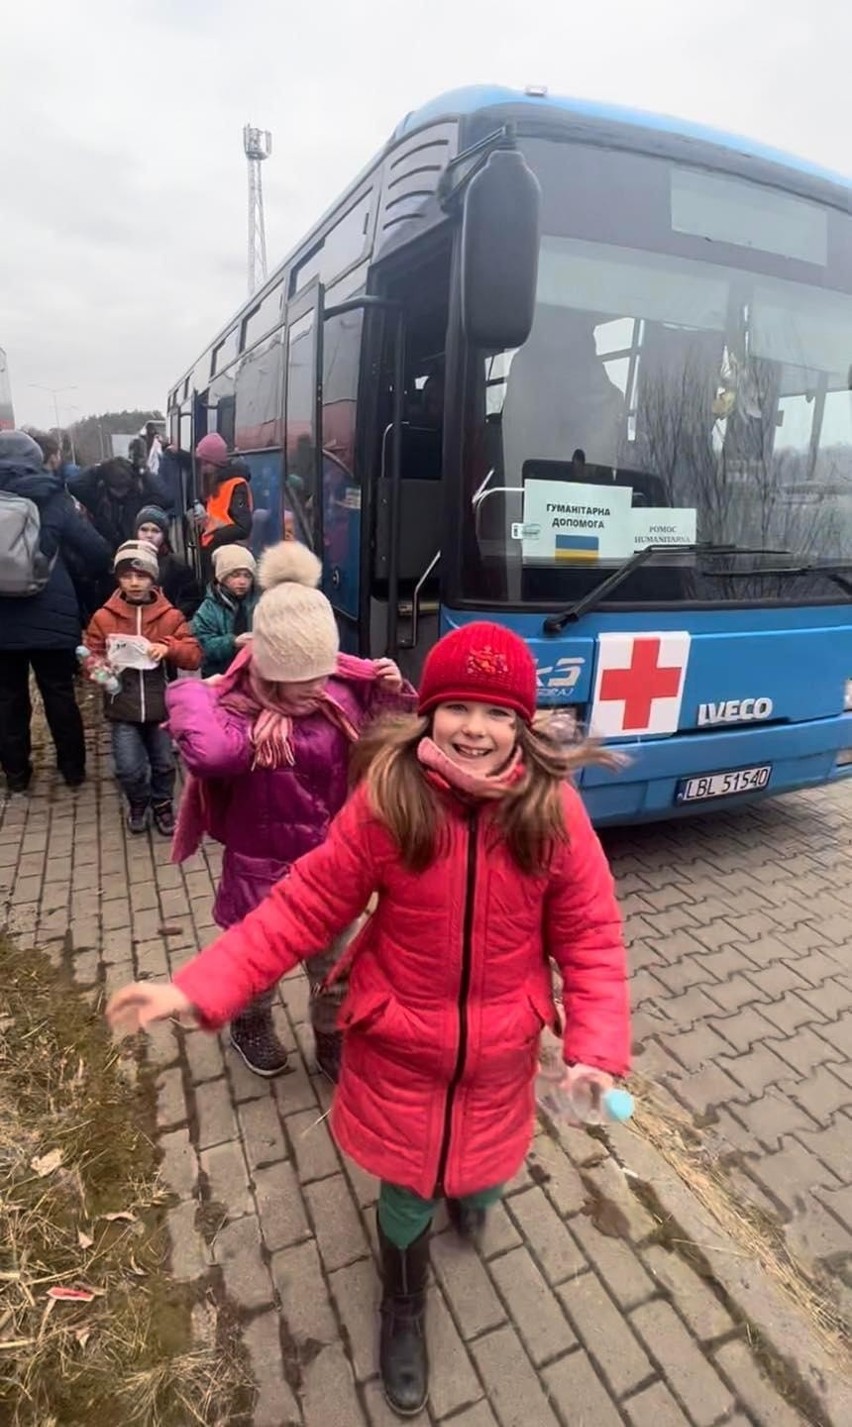 PKS Biłgoraj wspiera uchodźców. Autobusy pomogły m.in. w ewakuacji dzieci z domów dziecka w Ukrainie